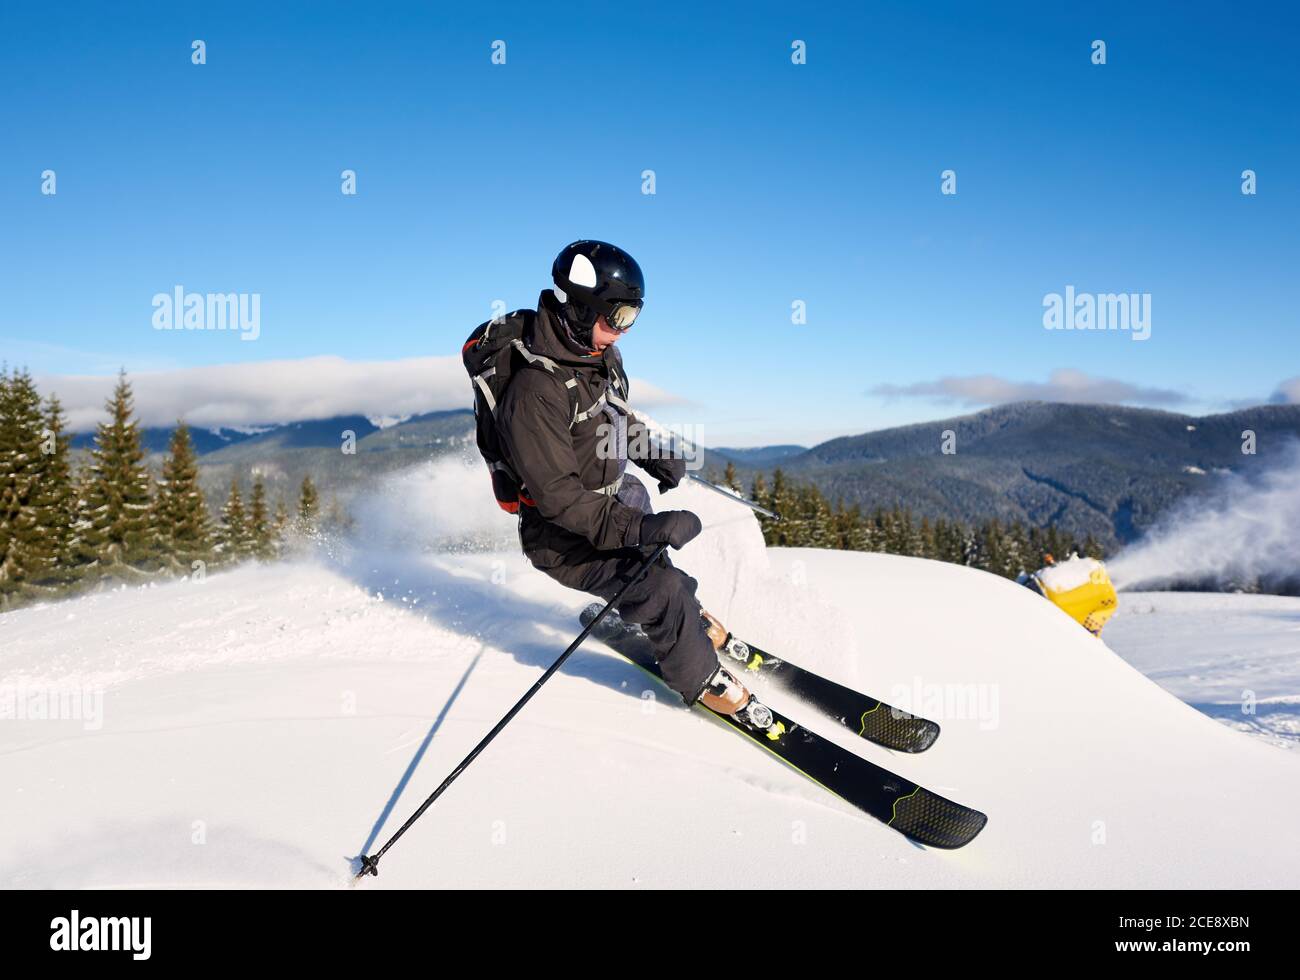 Allenamento concentrato di sciatore uomo su bassa collina artificiale con neve fresca in polvere in giornata di sole. Cannone da neve elettrico in azione sullo sfondo. Cielo blu e panoramiche montagne boscose sullo sfondo Foto Stock